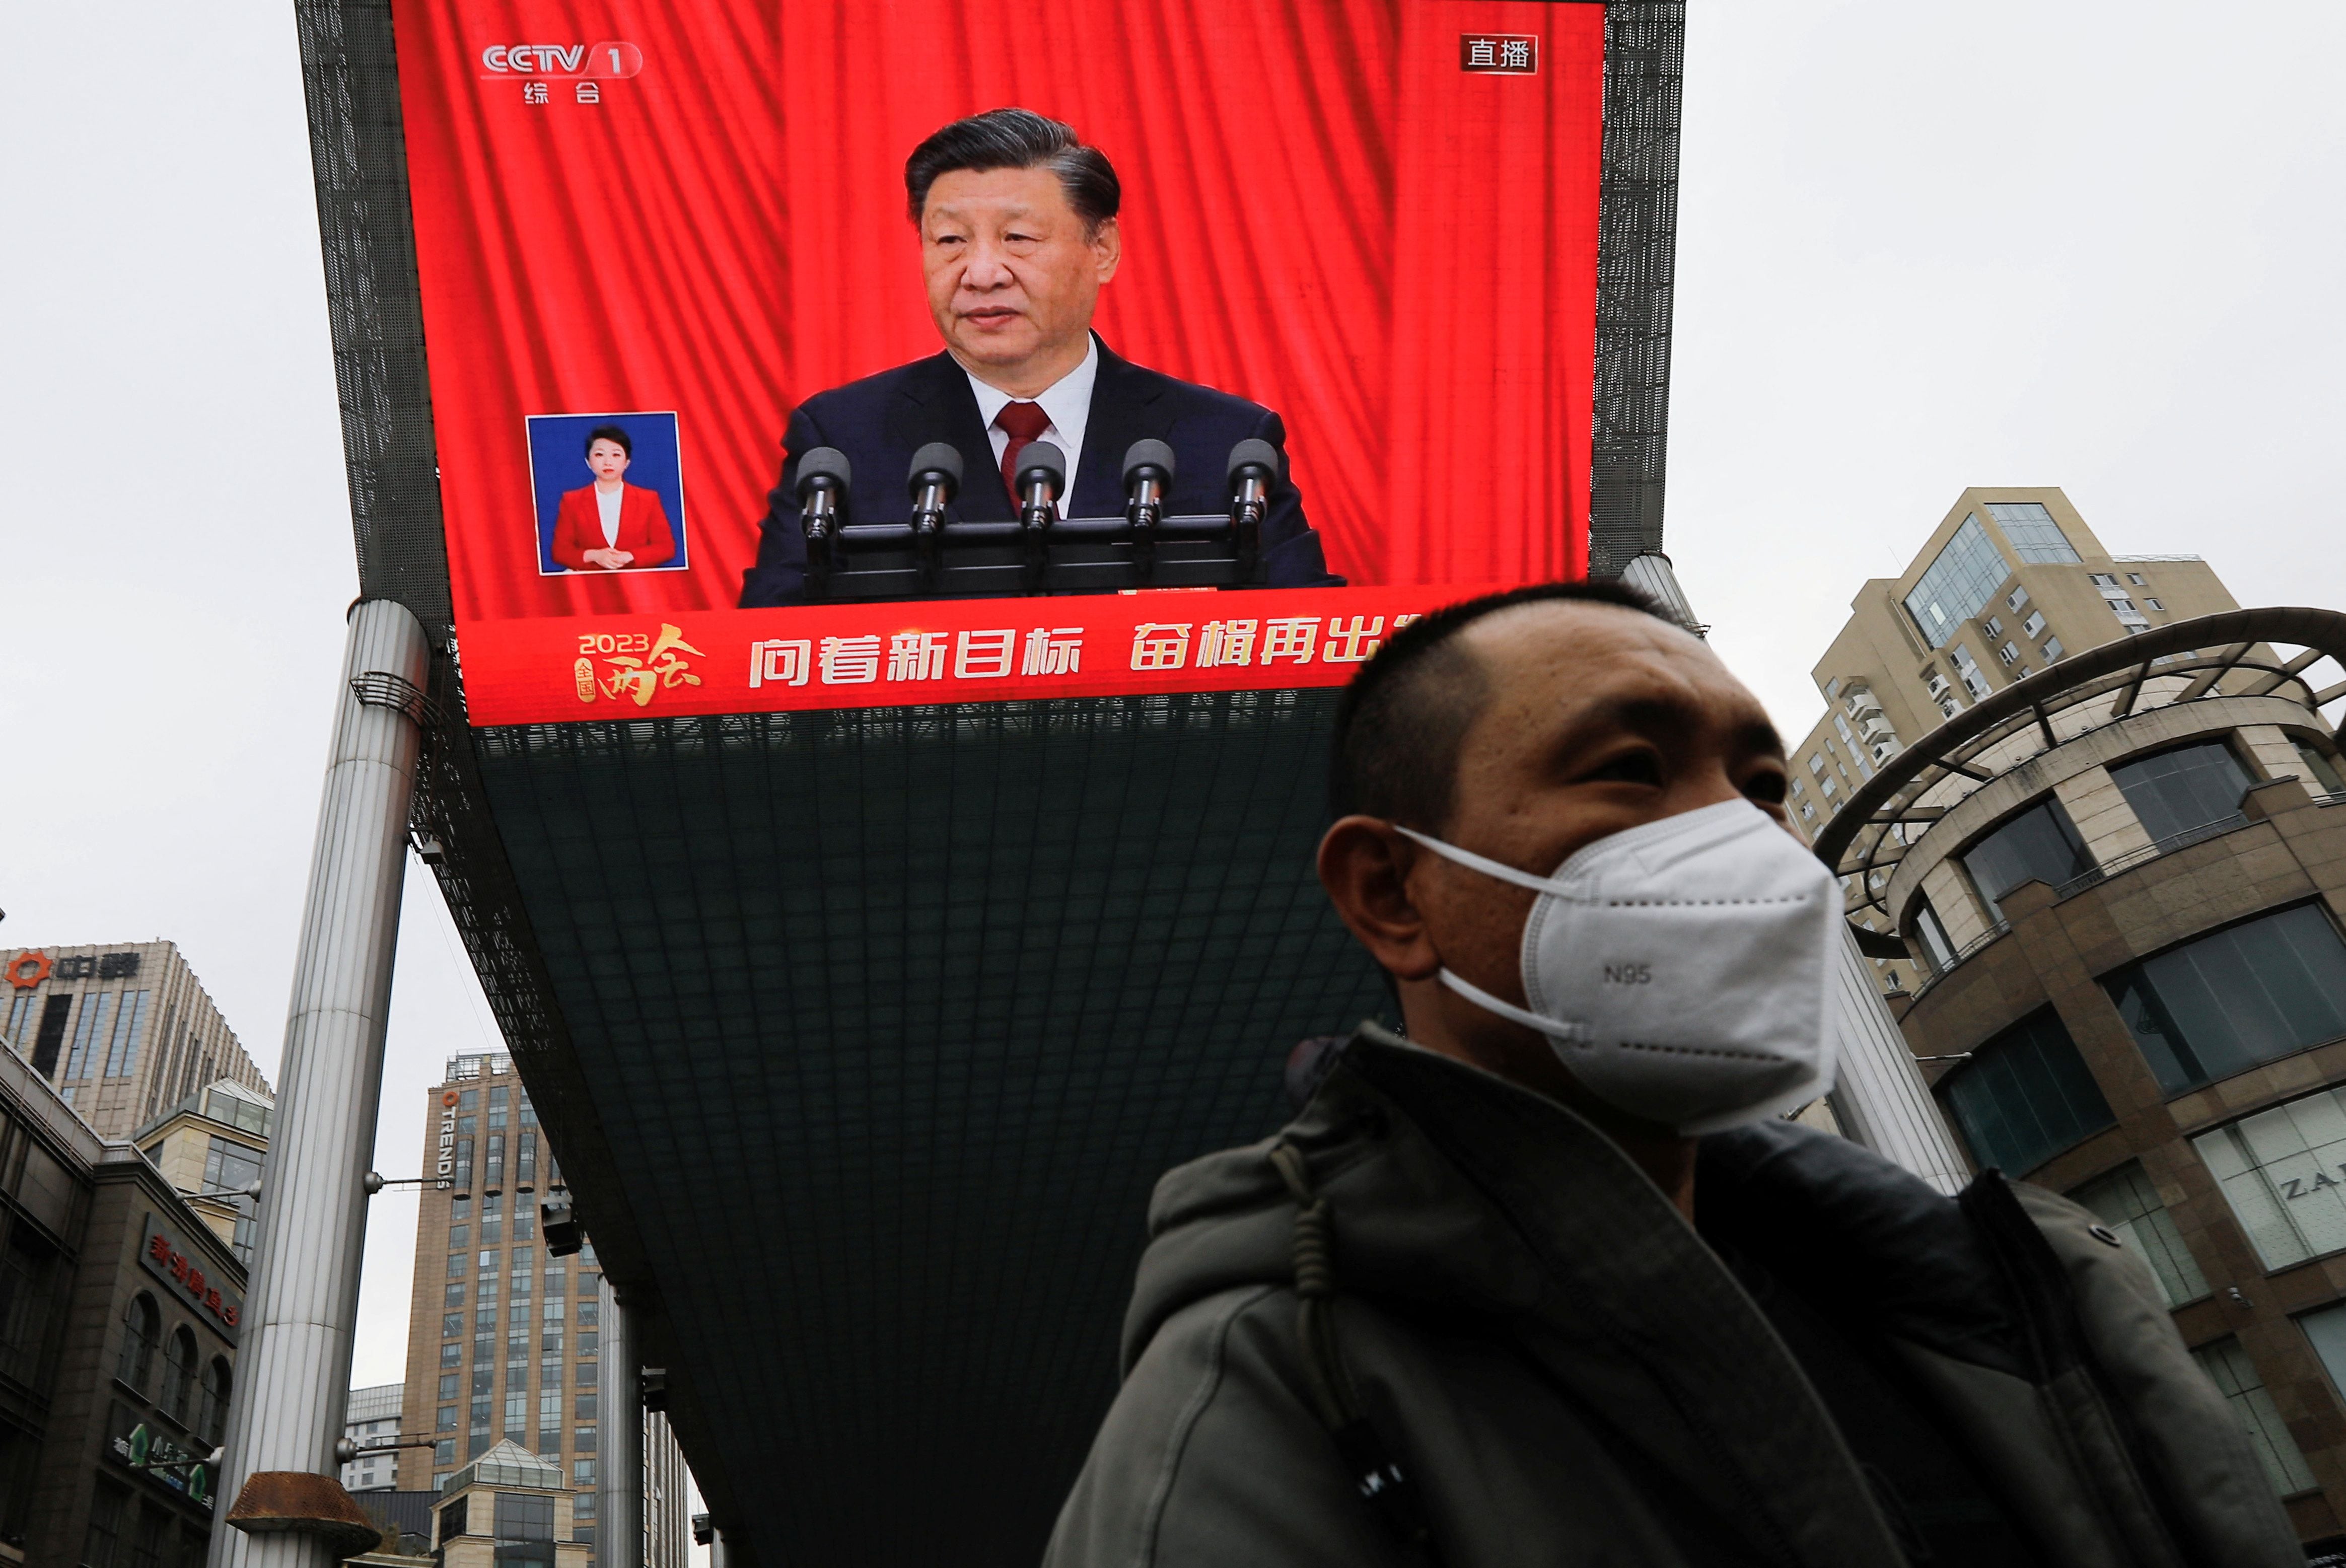 El régimen de Xi Jinping aumenta la persecución contra la población china (REUTERS/Tingshu Wang)